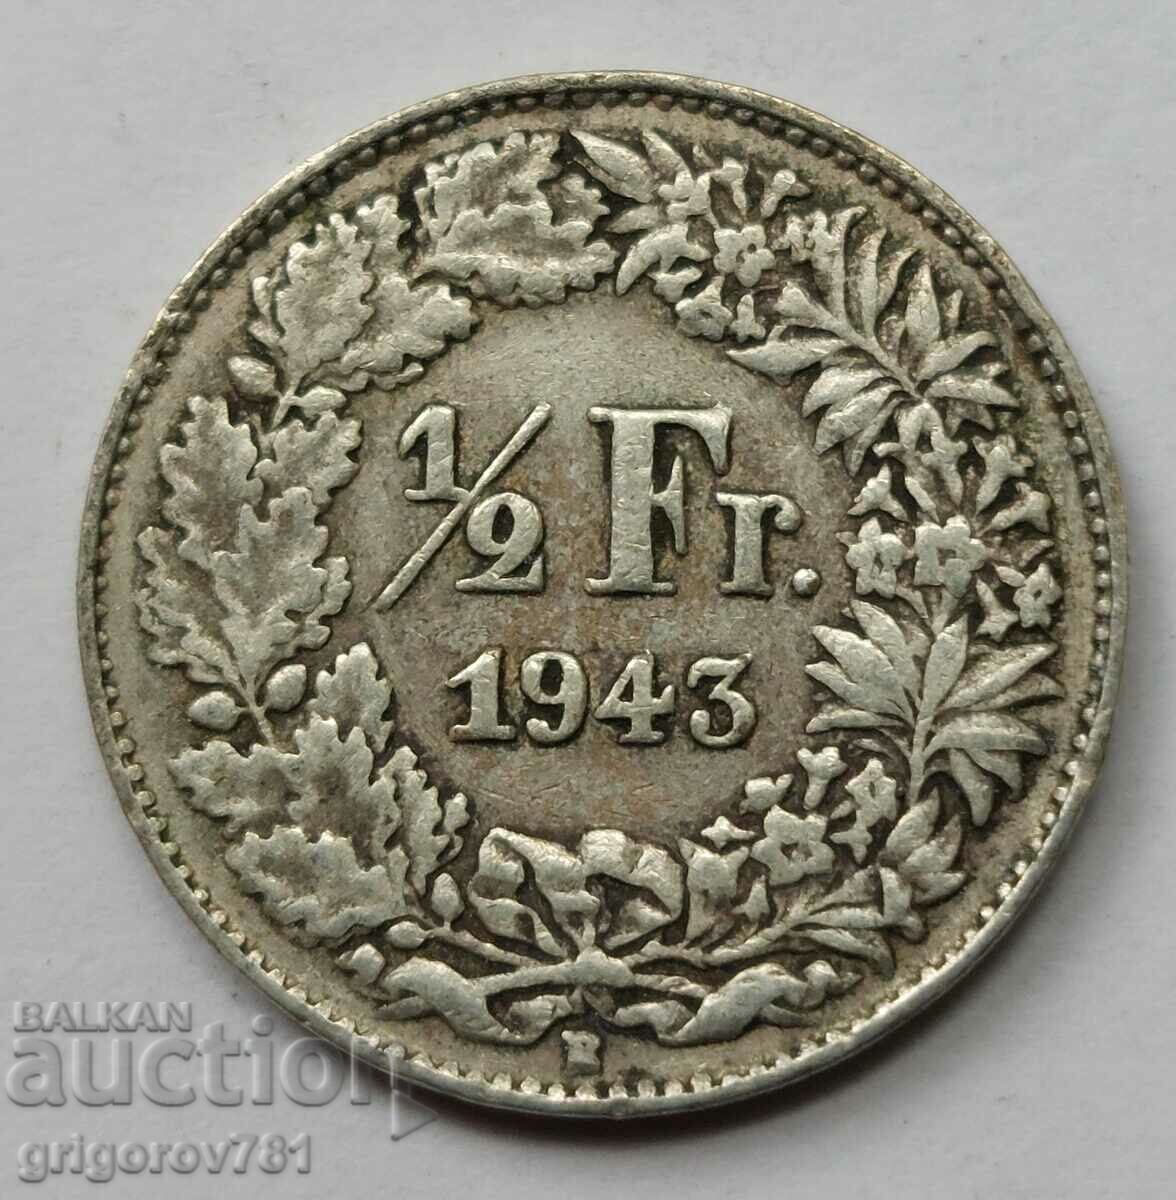 Ασημένιο φράγκο 1/2 Ελβετία 1943 Β - Ασημένιο νόμισμα #38